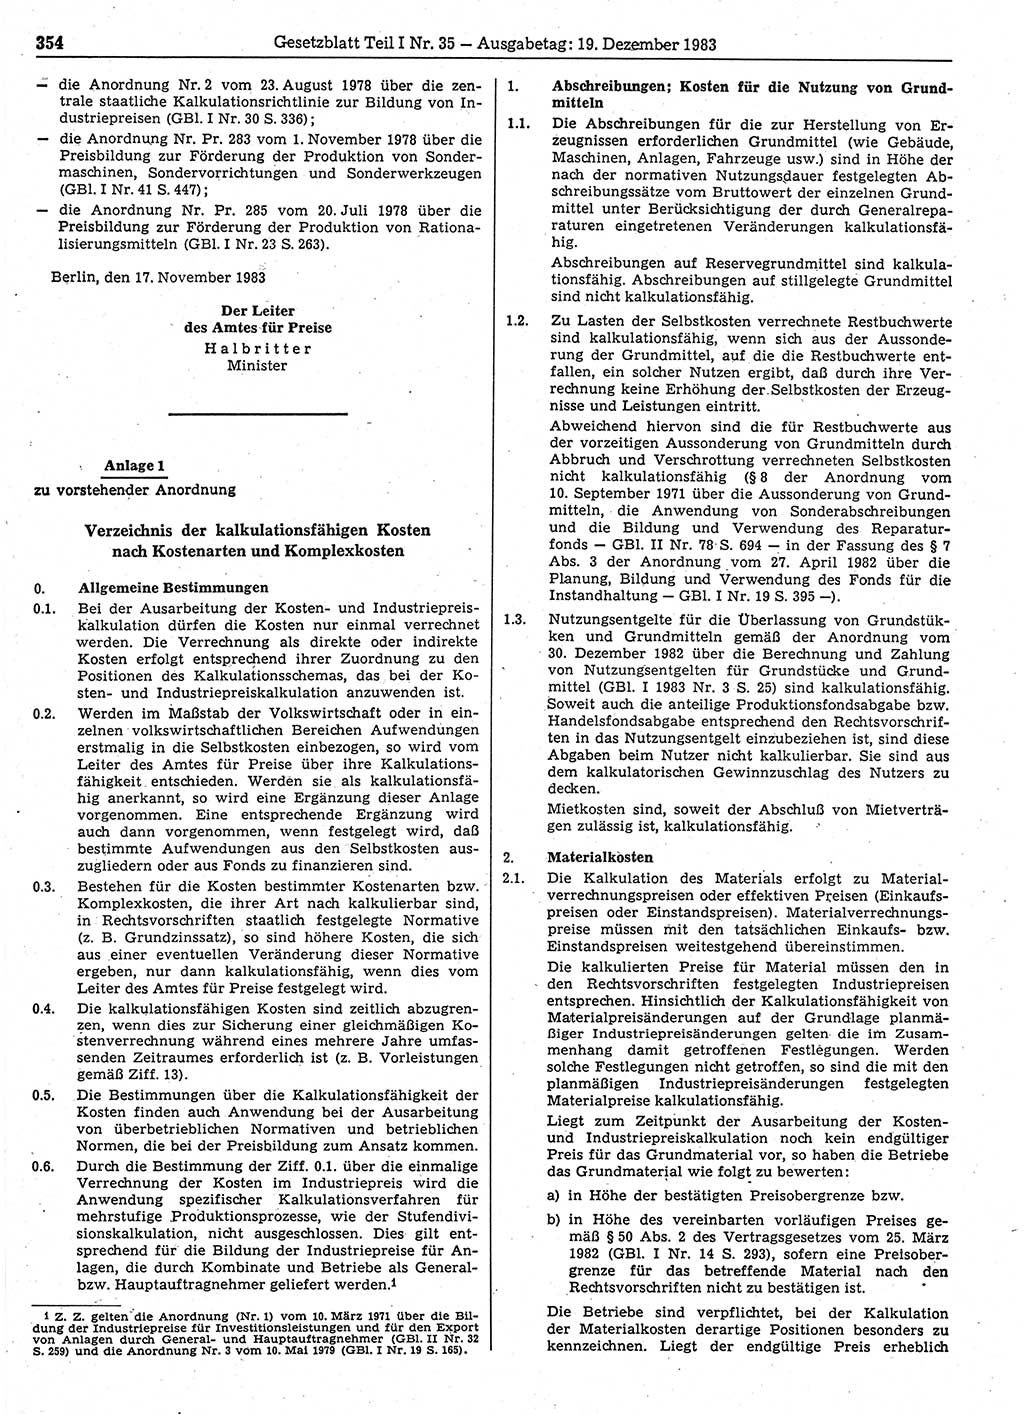 Gesetzblatt (GBl.) der Deutschen Demokratischen Republik (DDR) Teil Ⅰ 1983, Seite 354 (GBl. DDR Ⅰ 1983, S. 354)